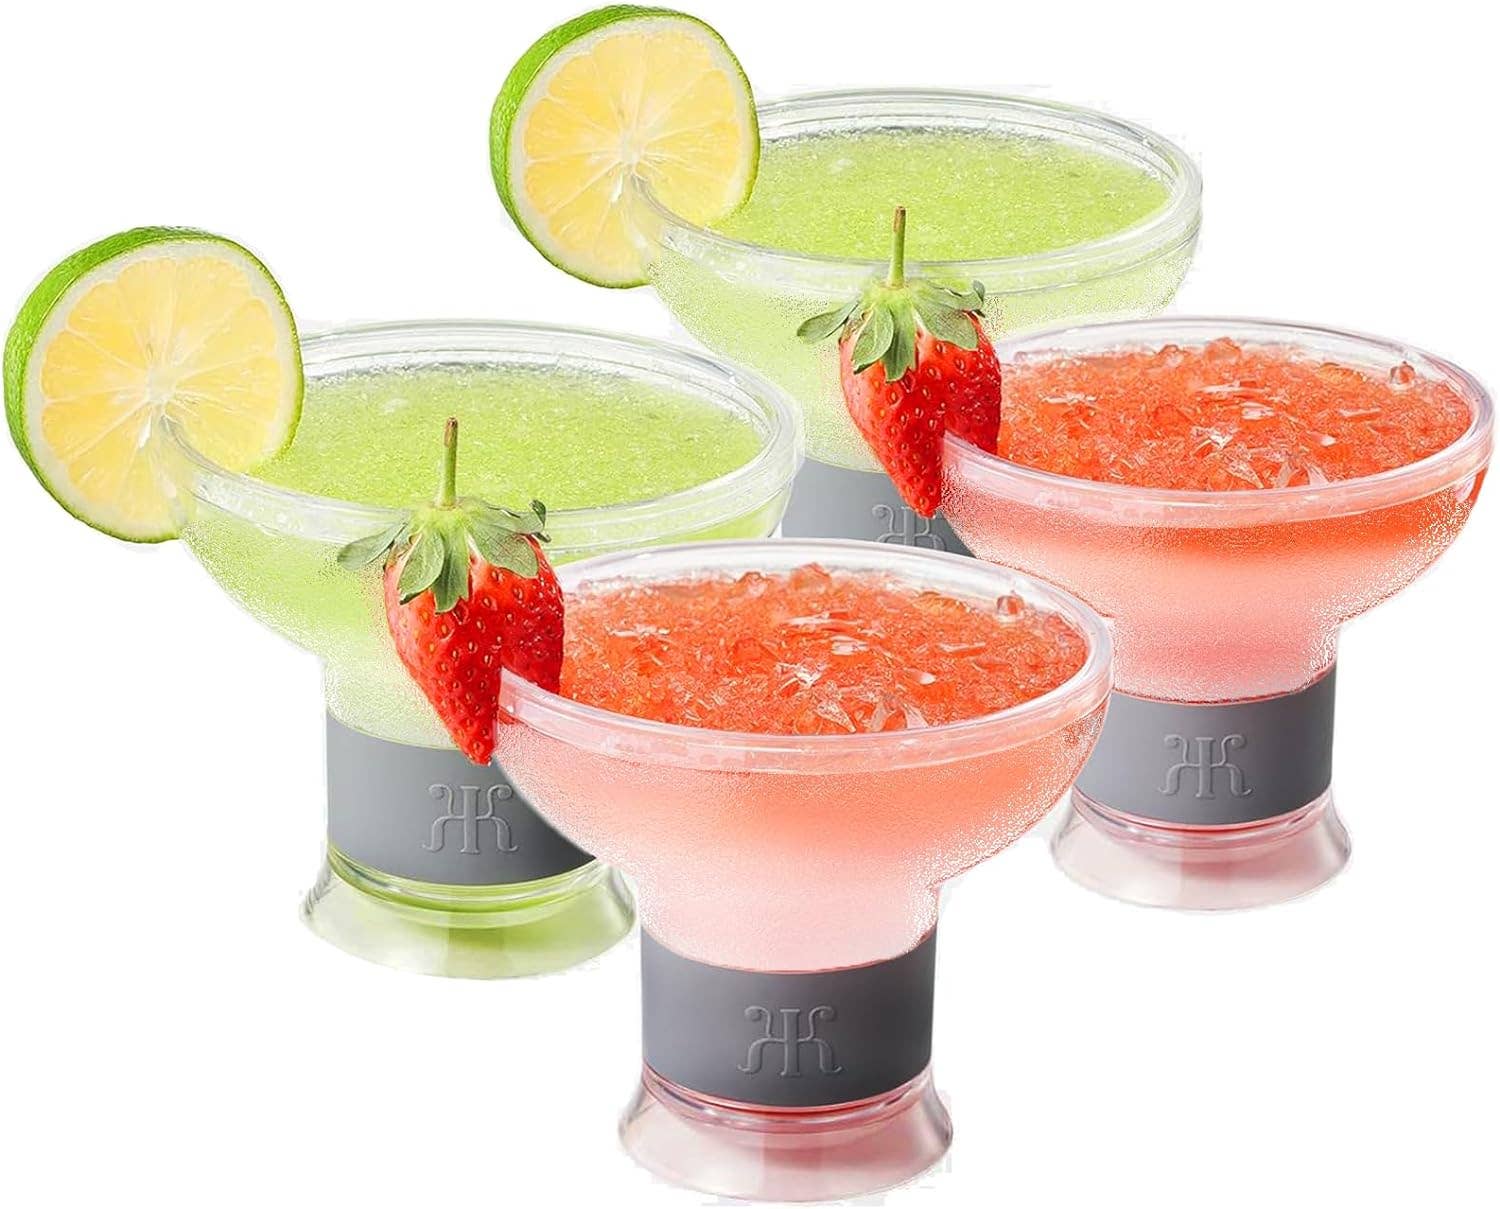 Frozen Margarita & Cocktail Chiller Glasses